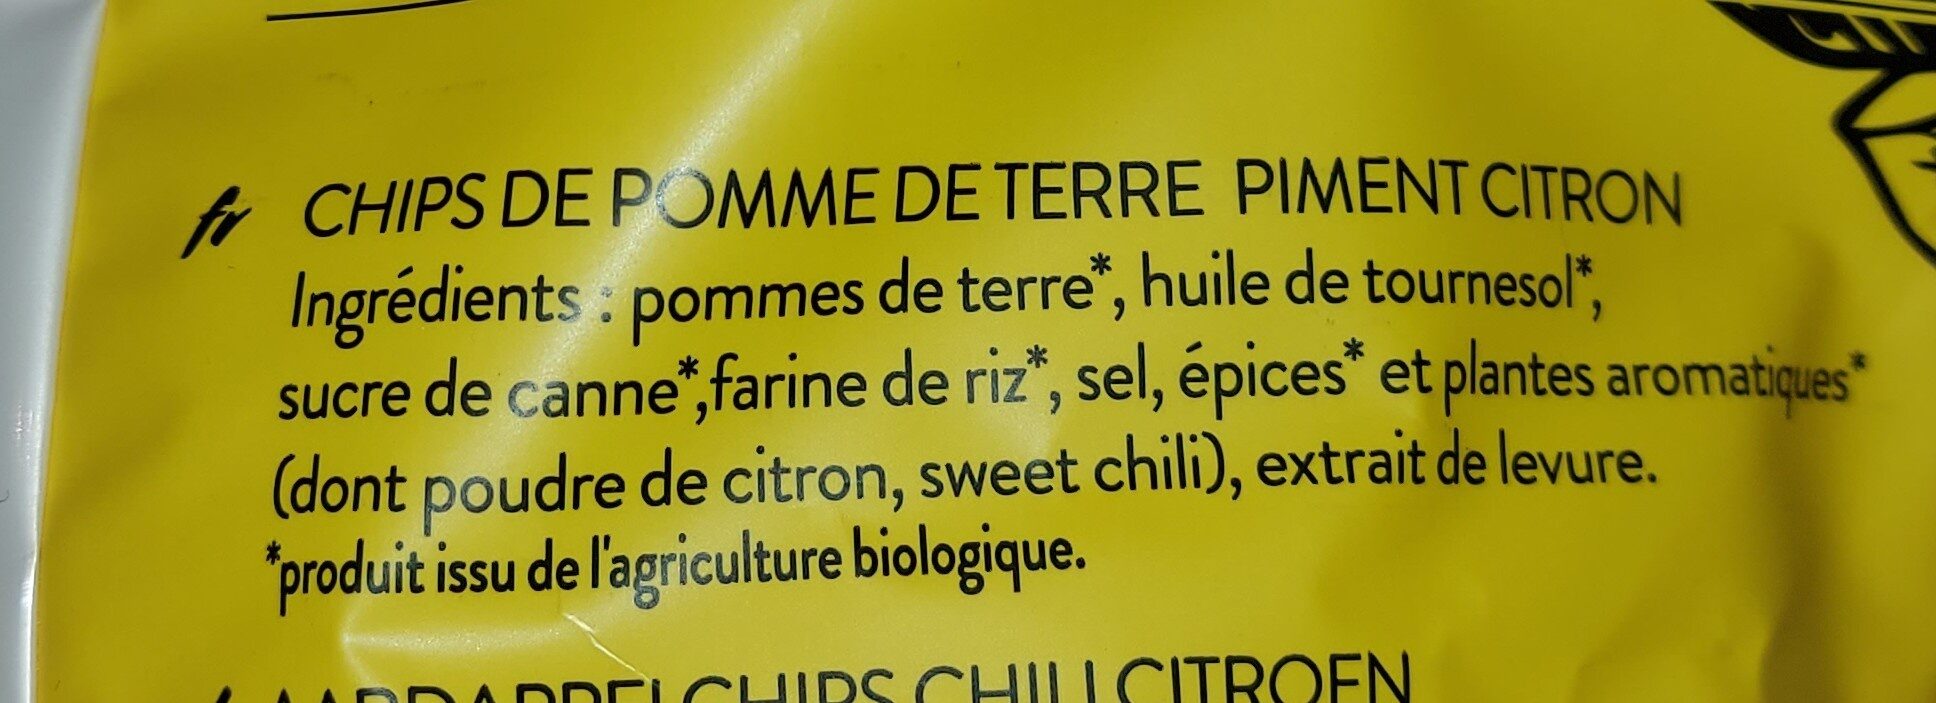 Chips bio piment citron - Ingrédients